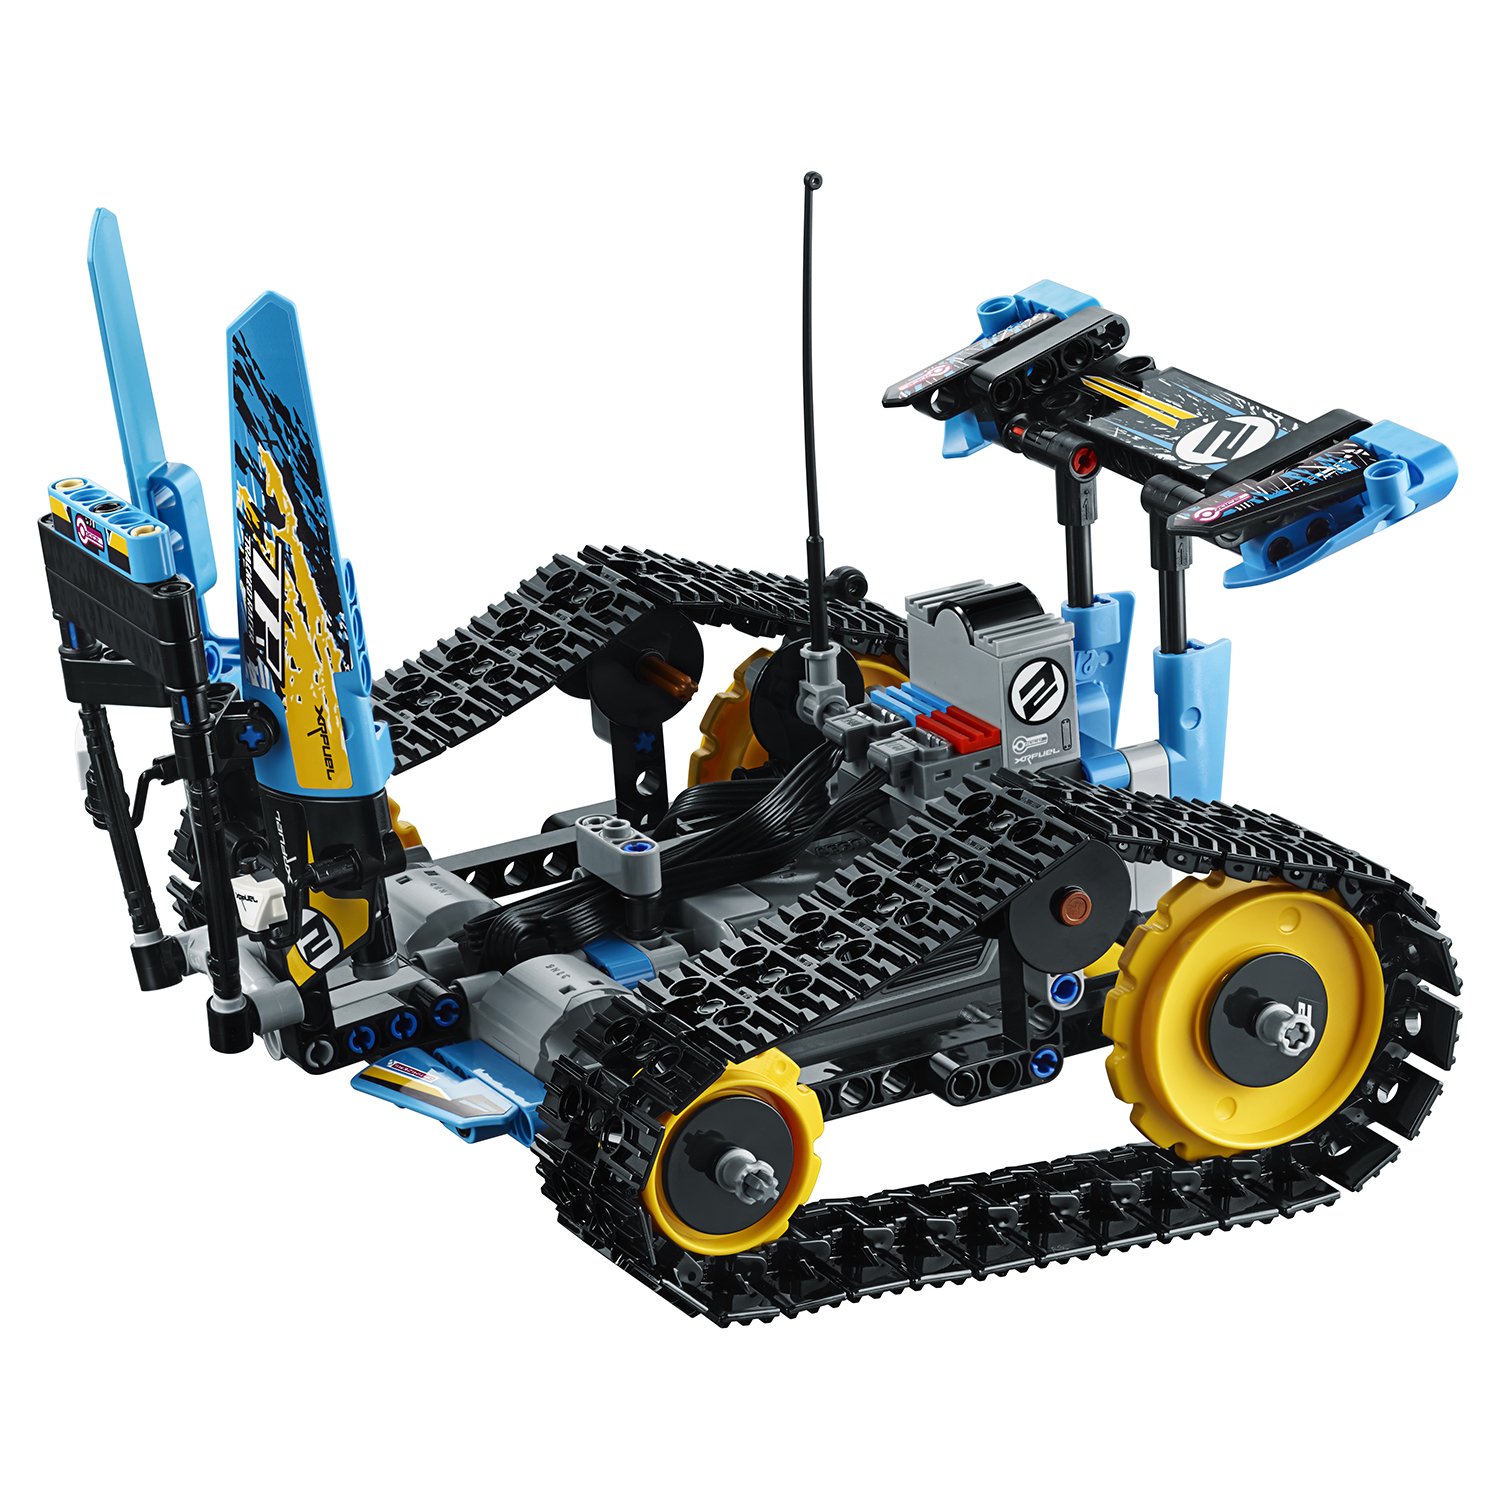 Lego Technic 42095 Скоростной вездеход с дистанционным управлением